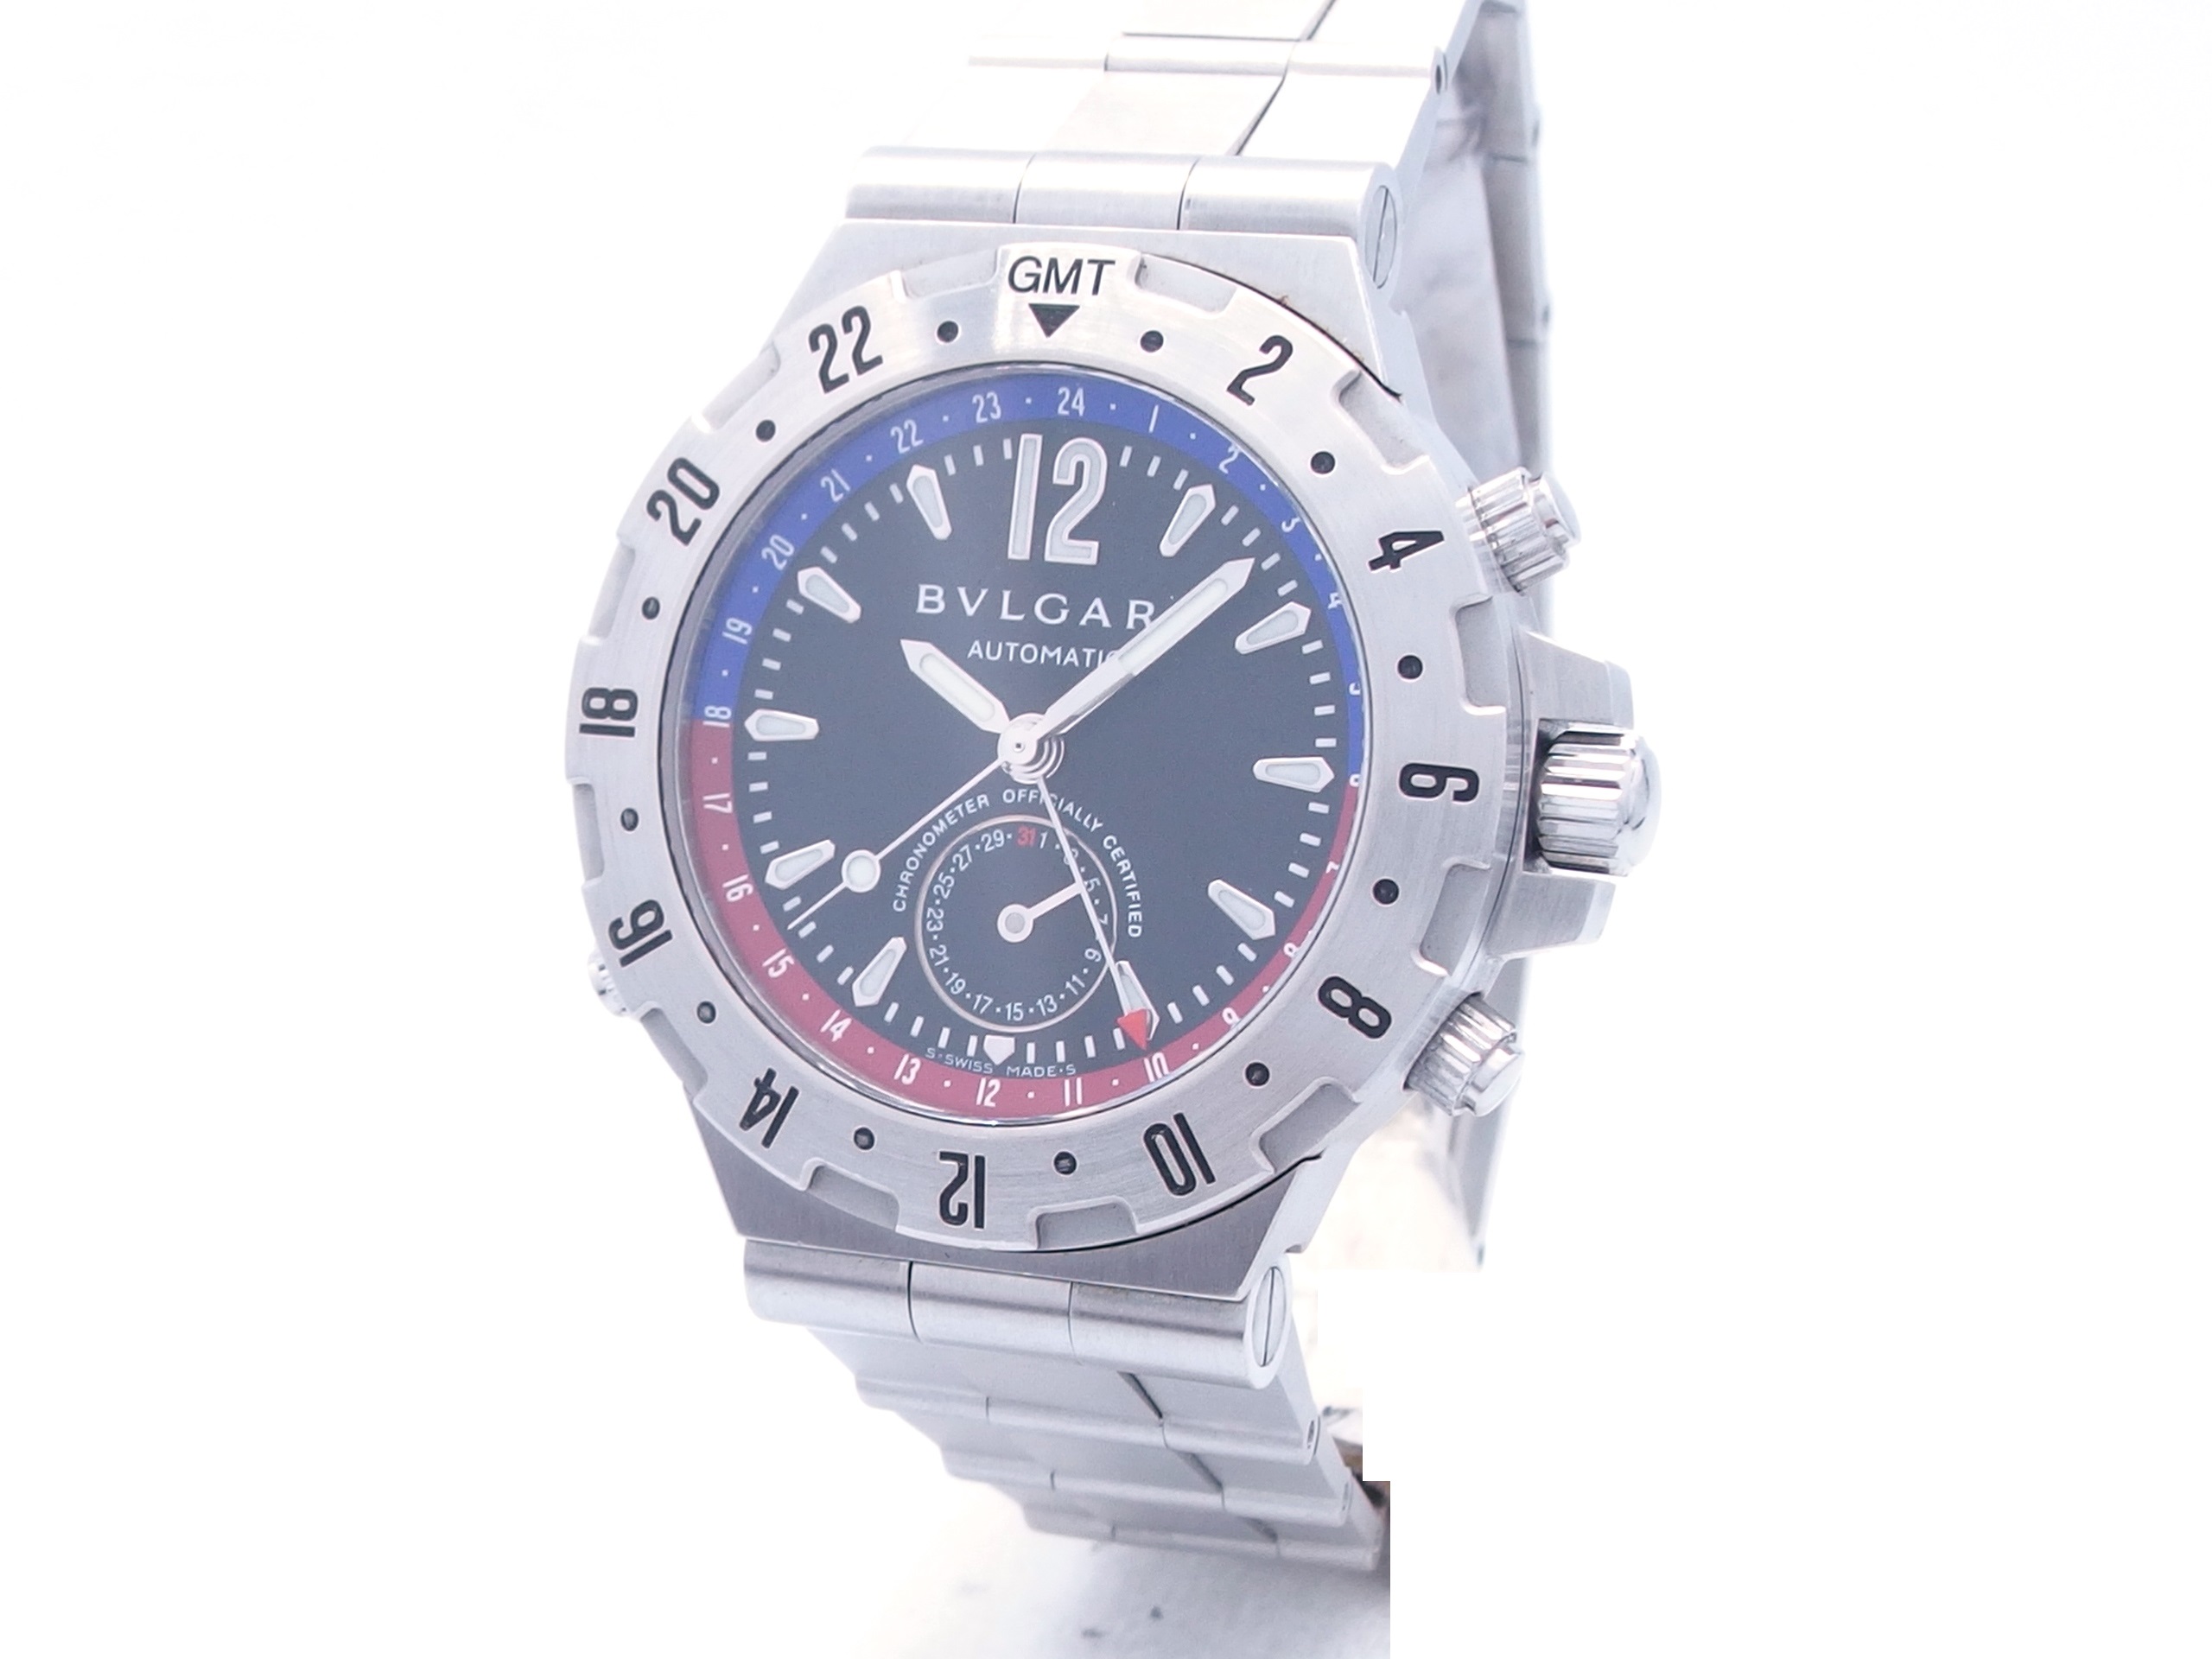 BVLGARI ブルガリ 時計 ディアゴノ プロフェッショナル GMT オートマチック GMT40S ブラック SS 【432】の購入なら「質